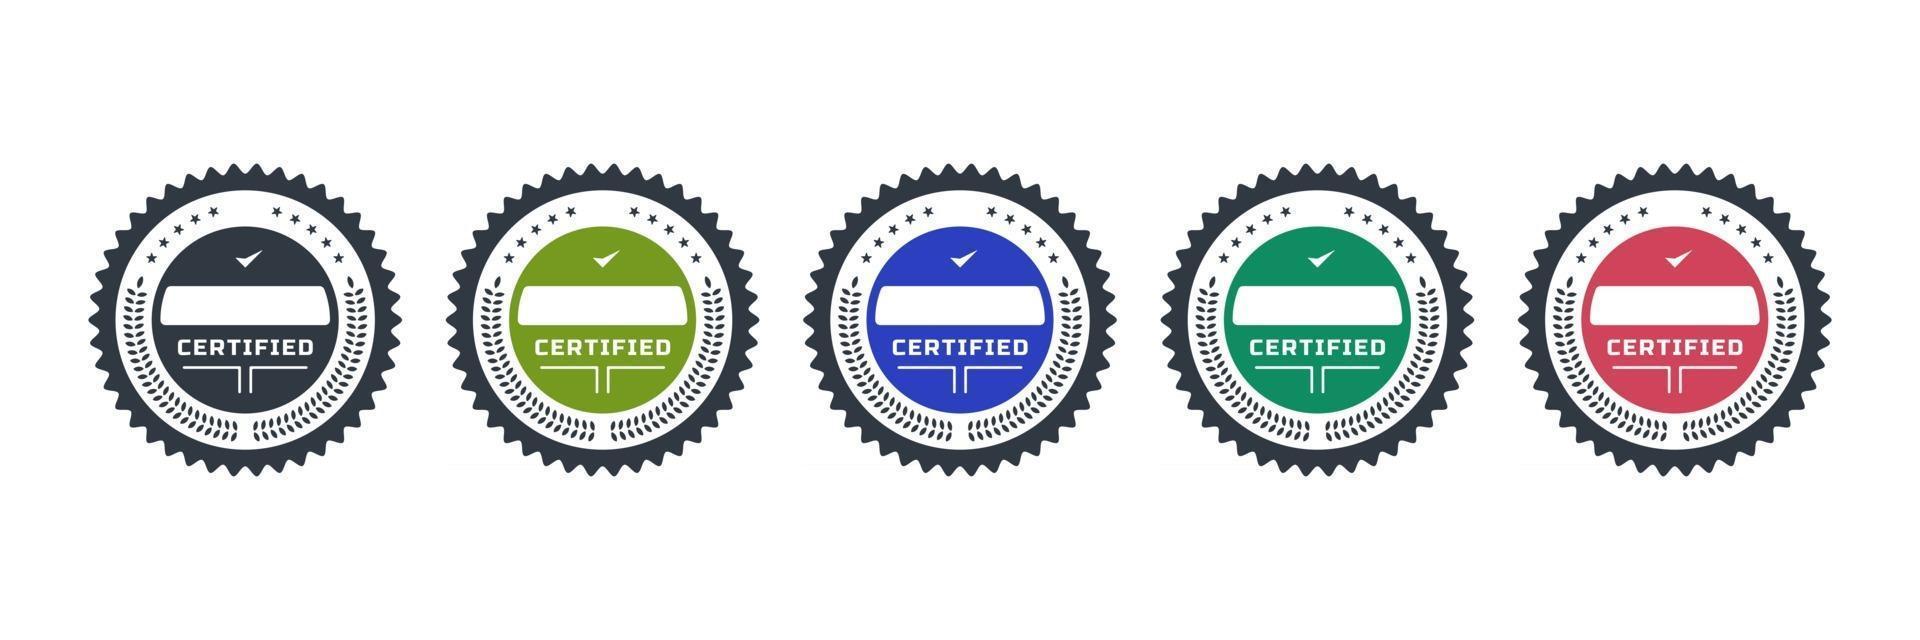 logos d'insigne certifiés pour le modèle d'icône d'emblème de vecteur d'entreprise de certification